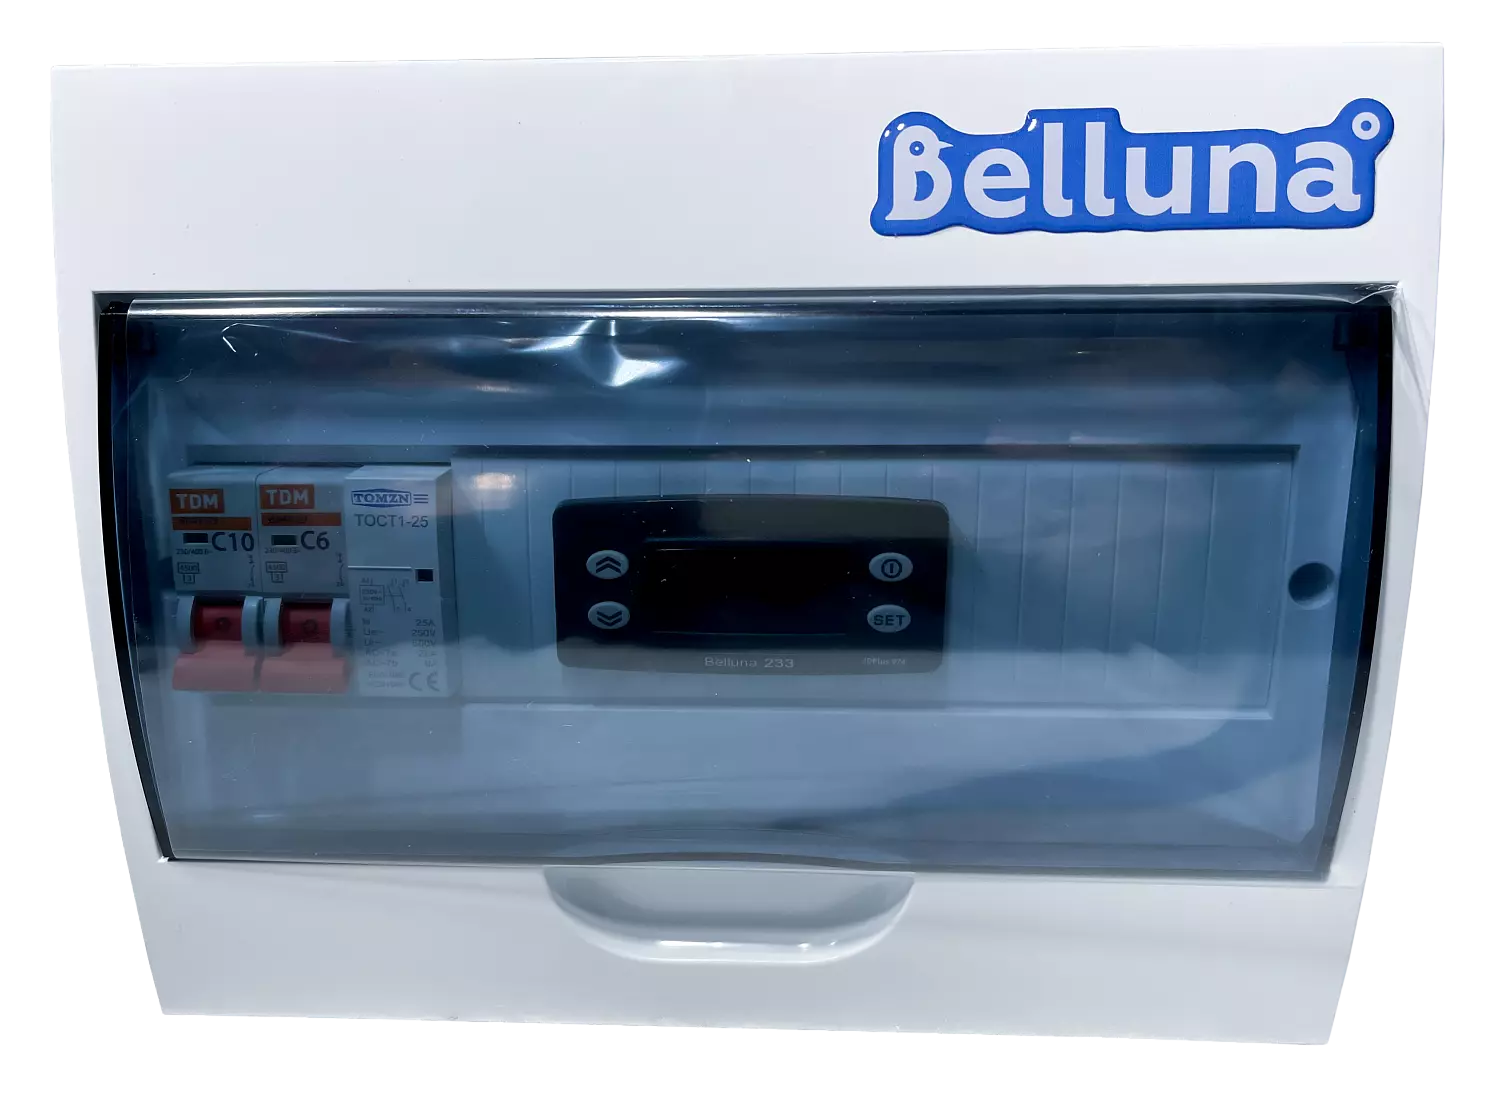 сплит-система Belluna S226 W Пермь